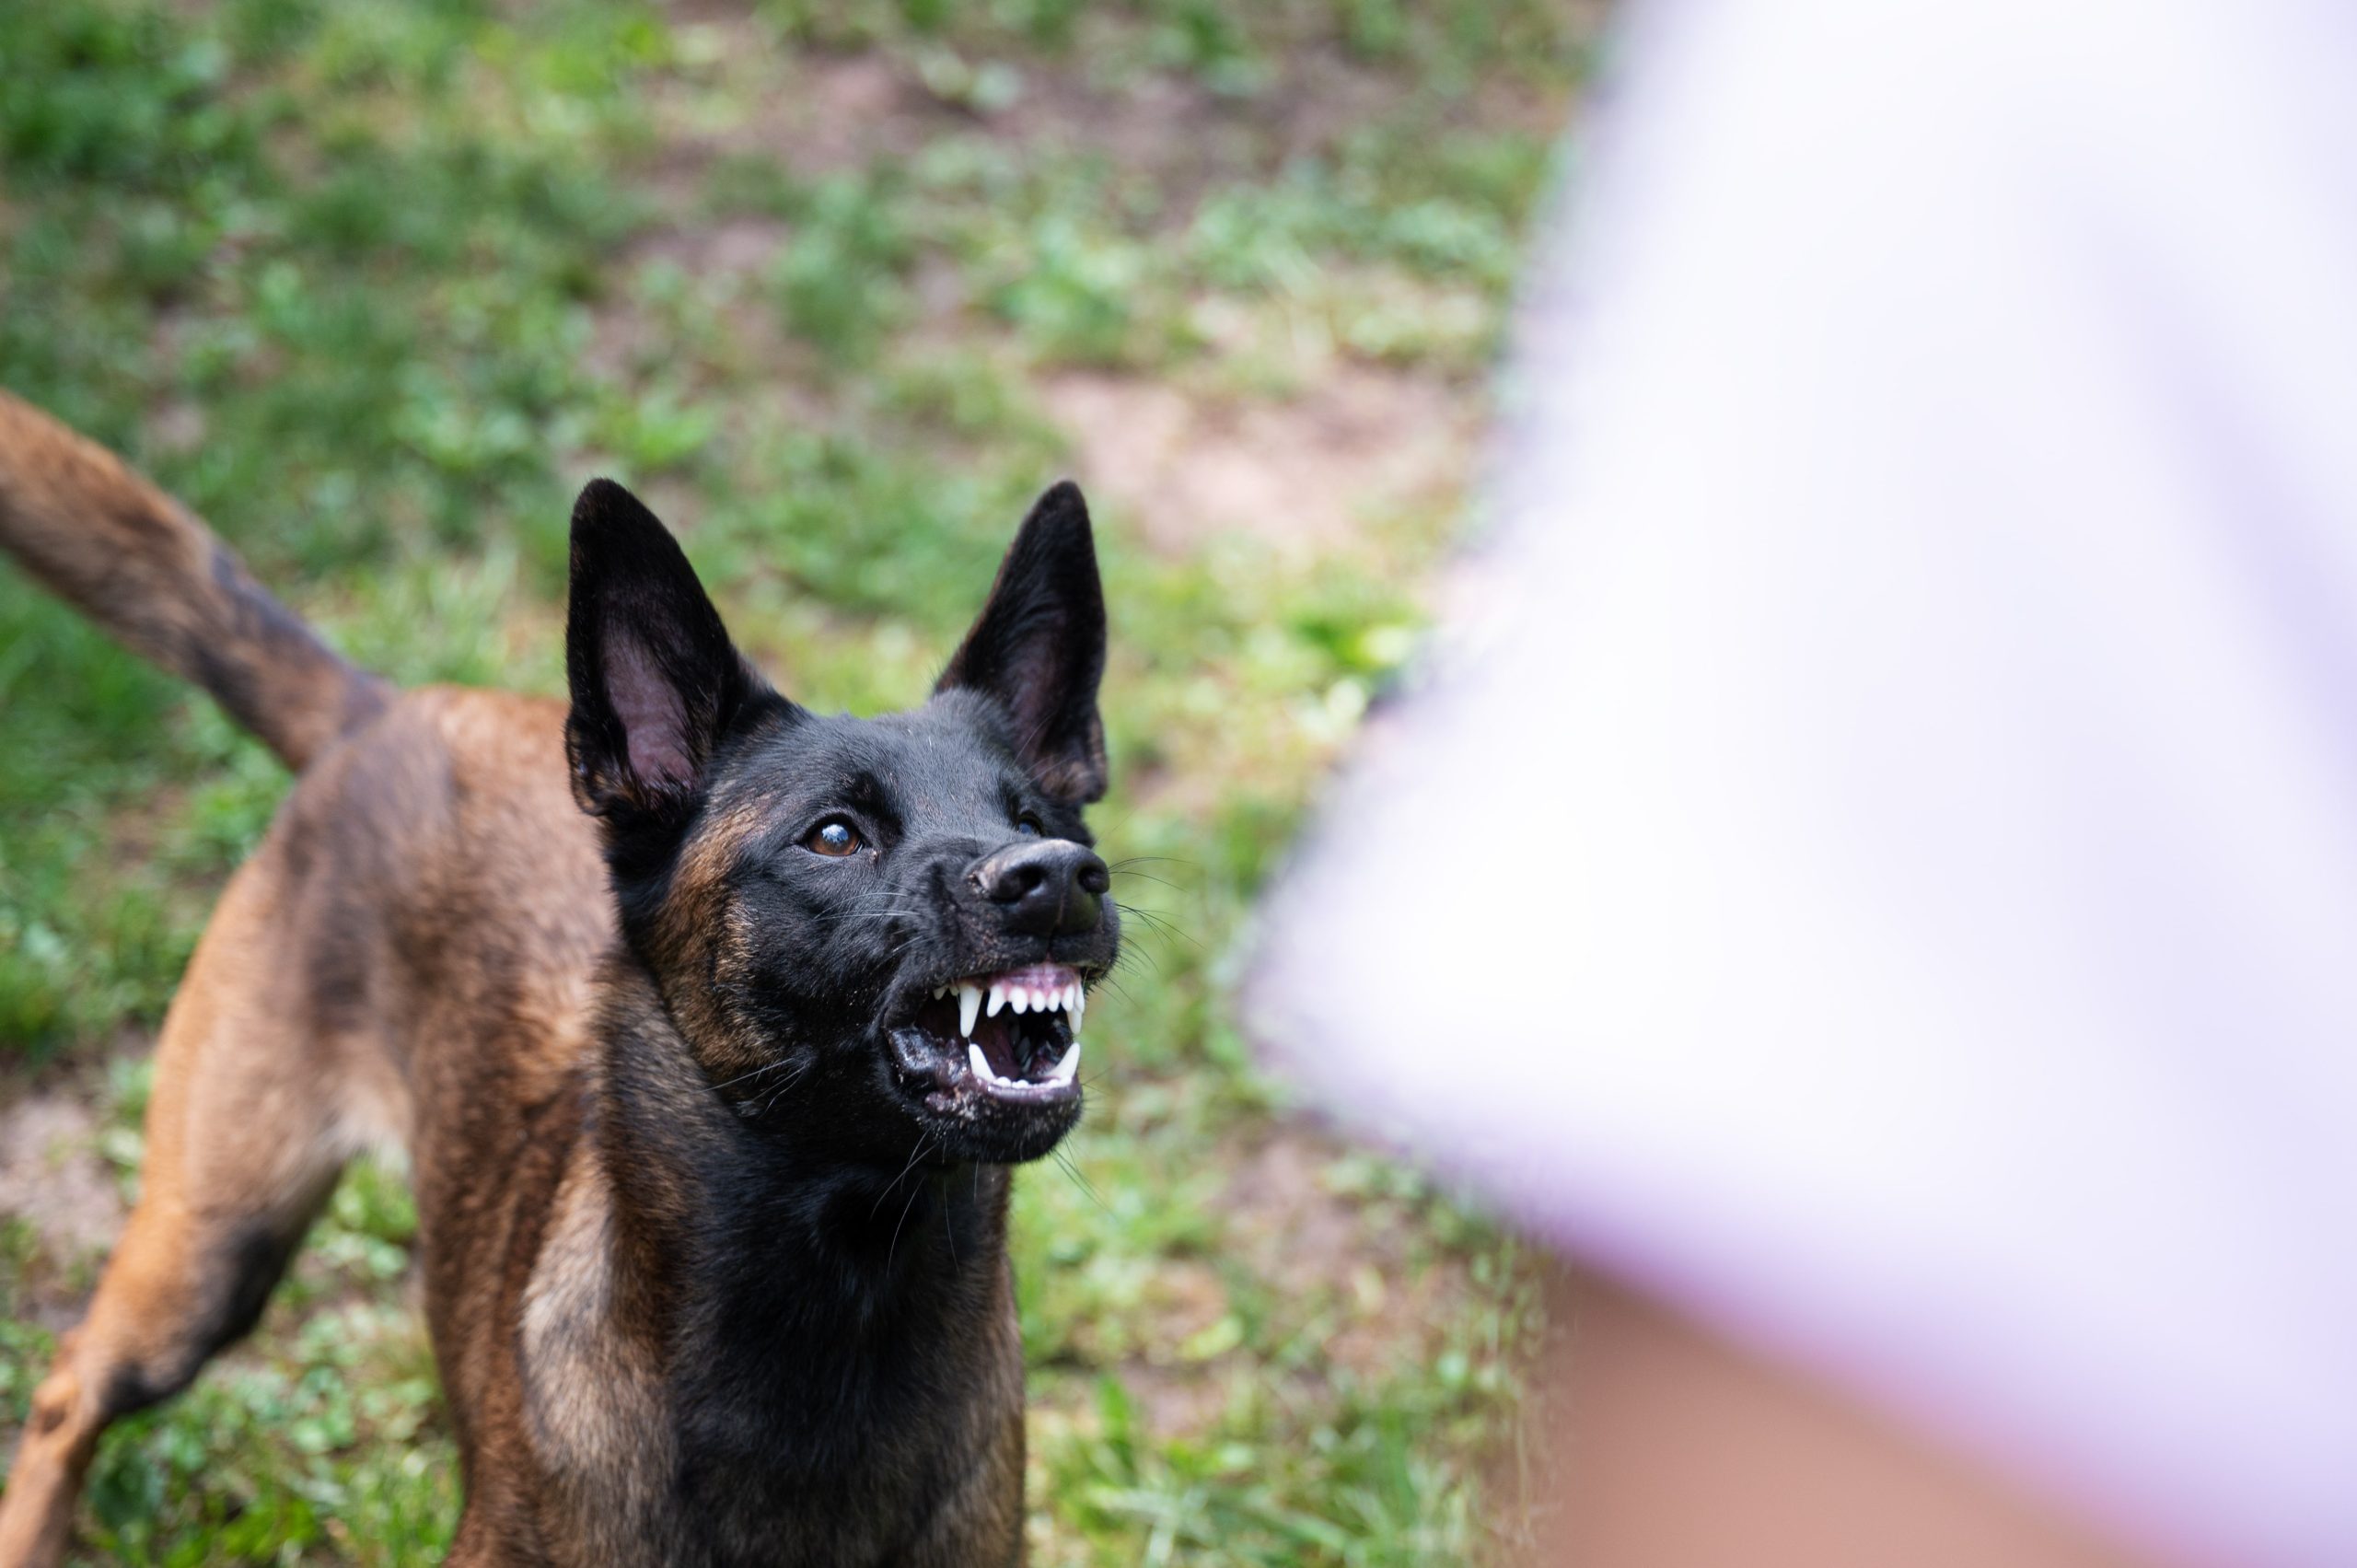 Ein belgischer Malinois Schäferhund steht vor einem Menschen, knurrt und zeigt seine Zähne.